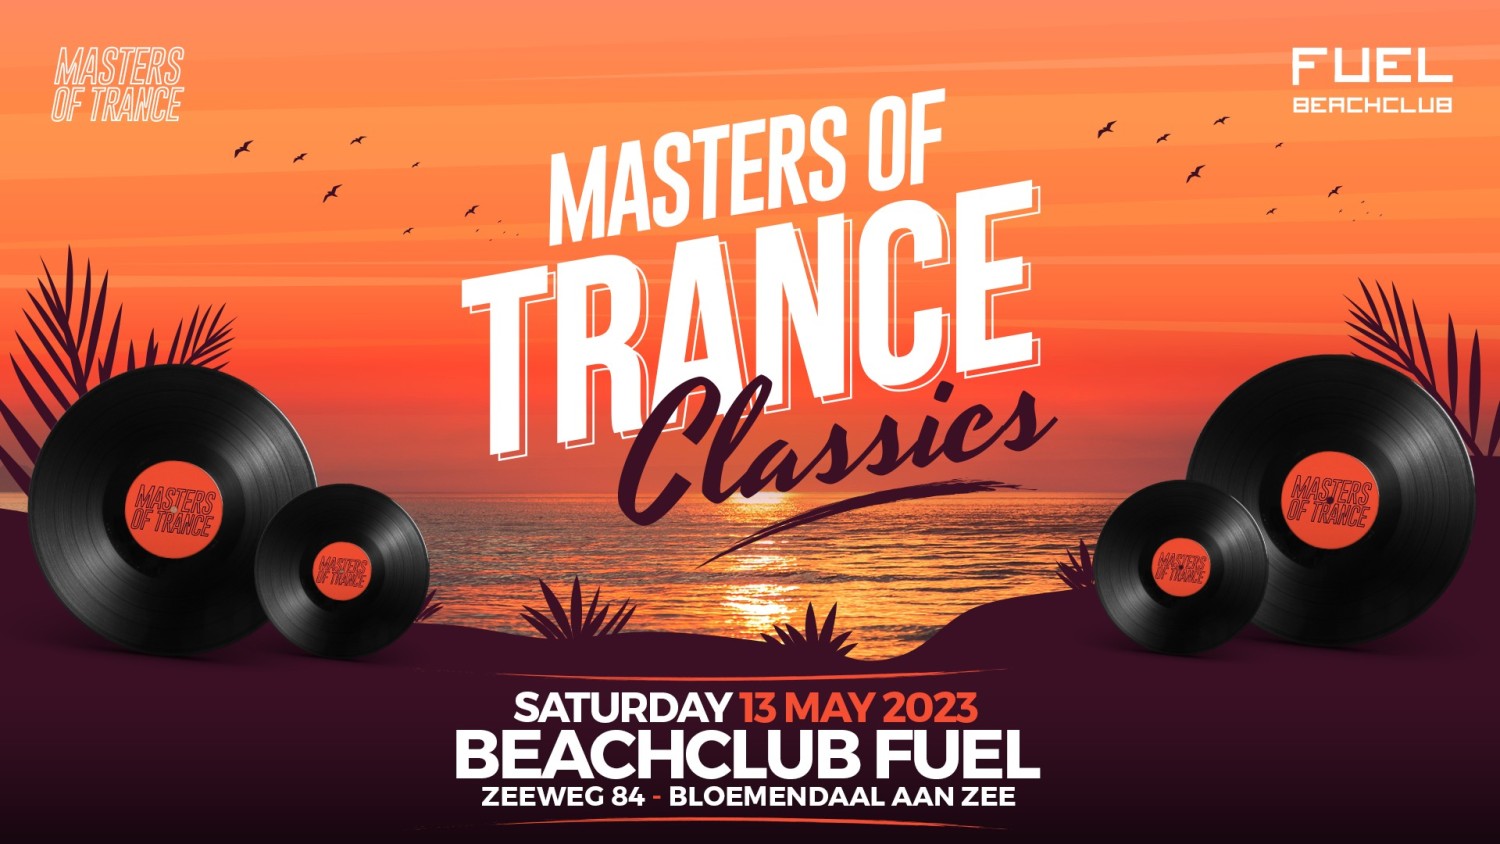 Party nieuws: Masters of Trance is terug bij Beachlub Fuel